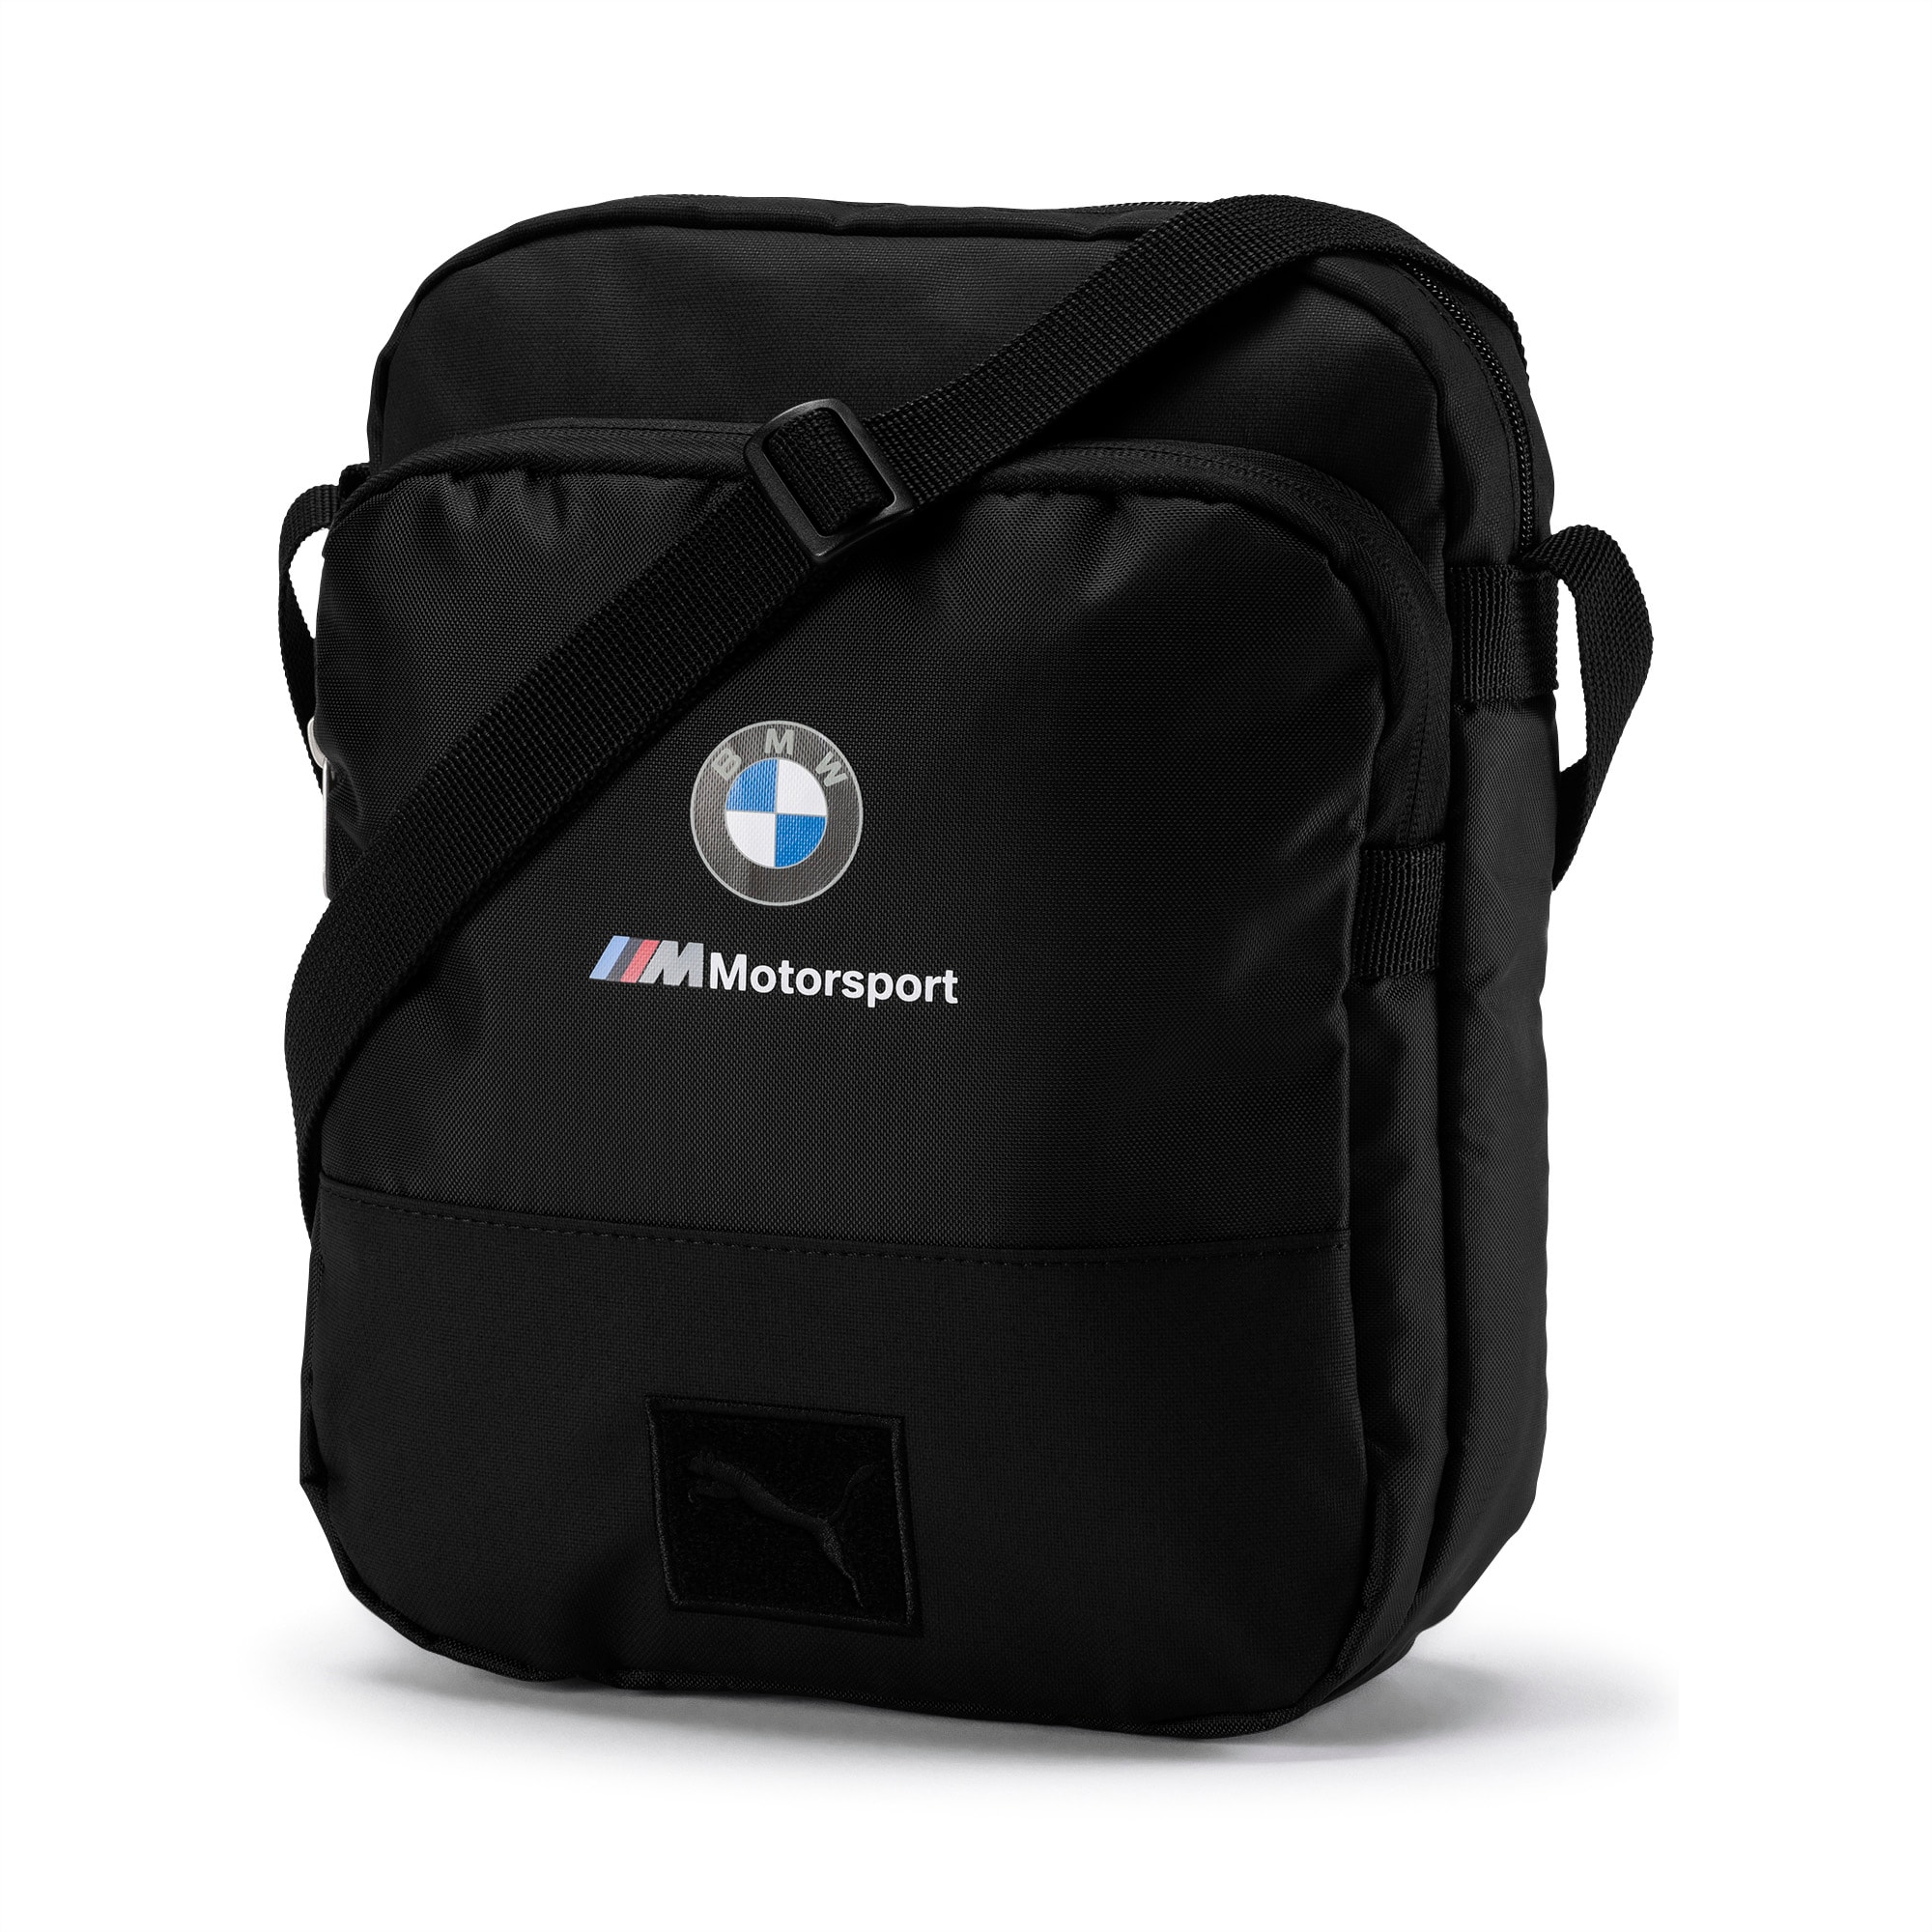 BMW M Motorsport Large Portable Shoulder Bag | PUMA Shop All Puma | PUMA